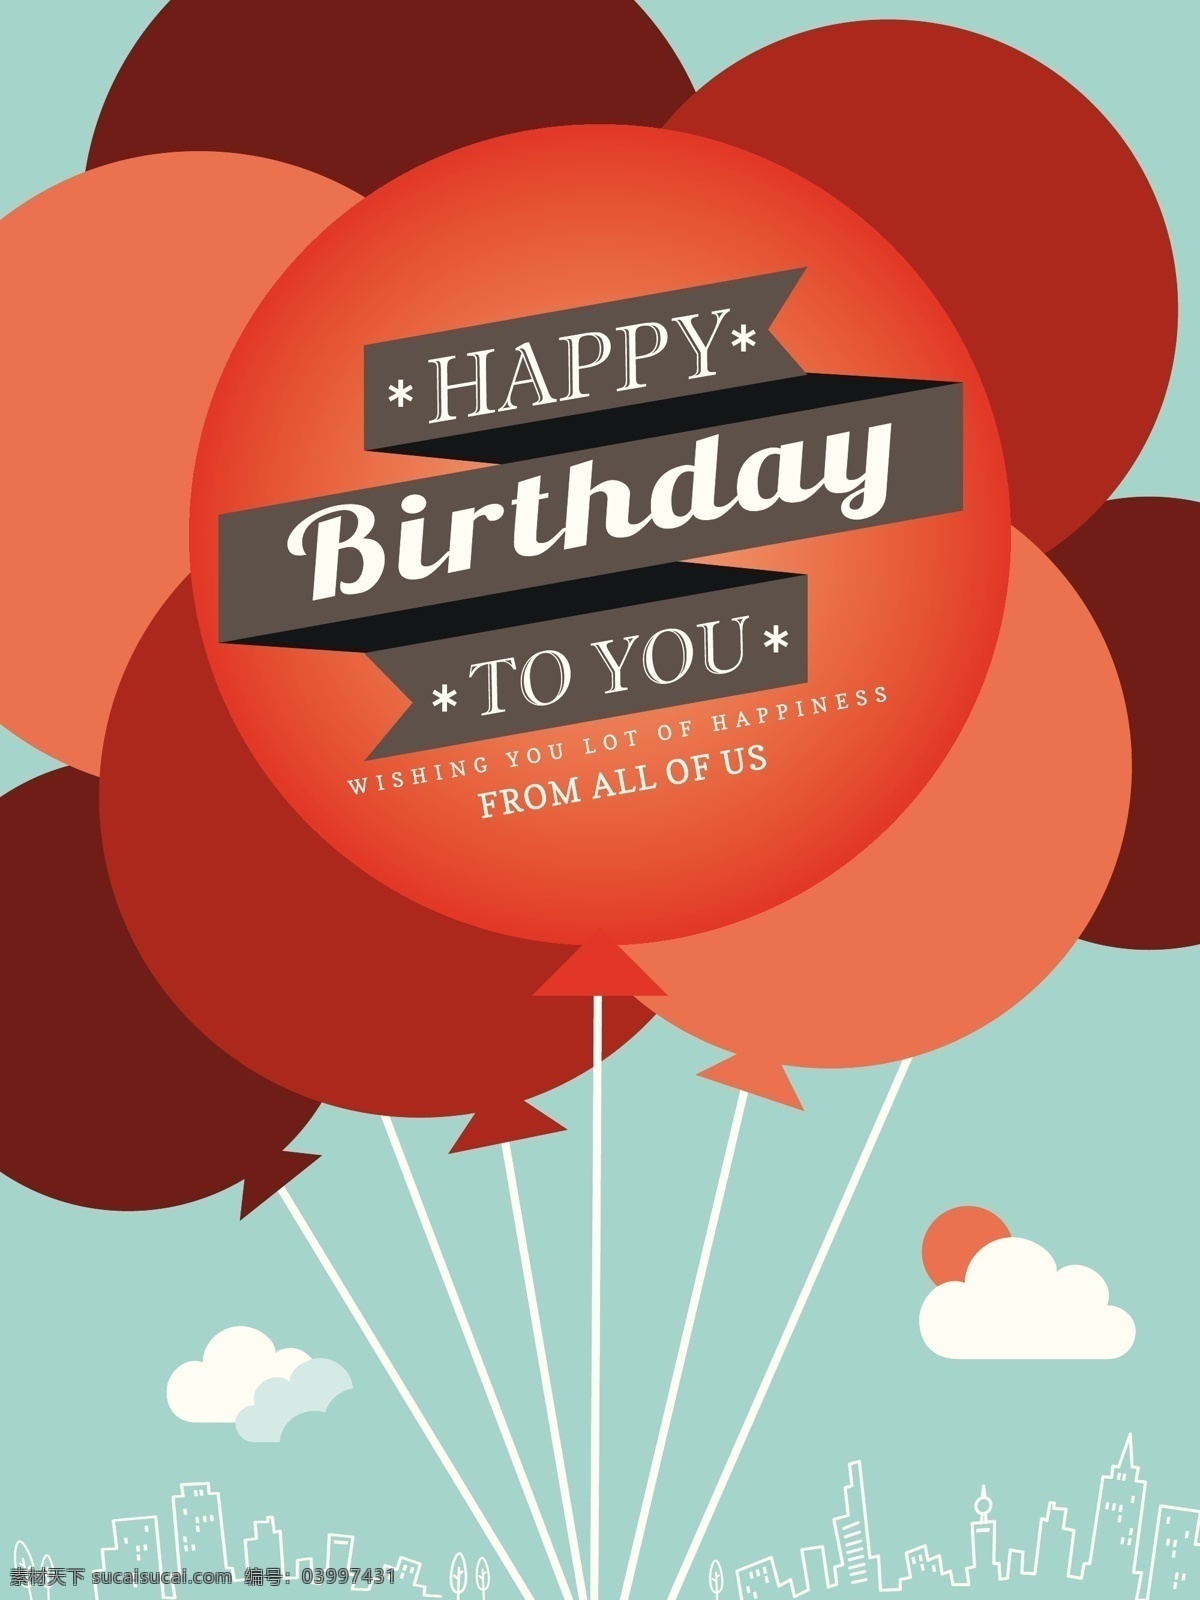 生日 快乐 矢量 卡片 格式 卡片设计 气球 生日卡片 生日快乐 生日卡片设计 矢量图 其他矢量图